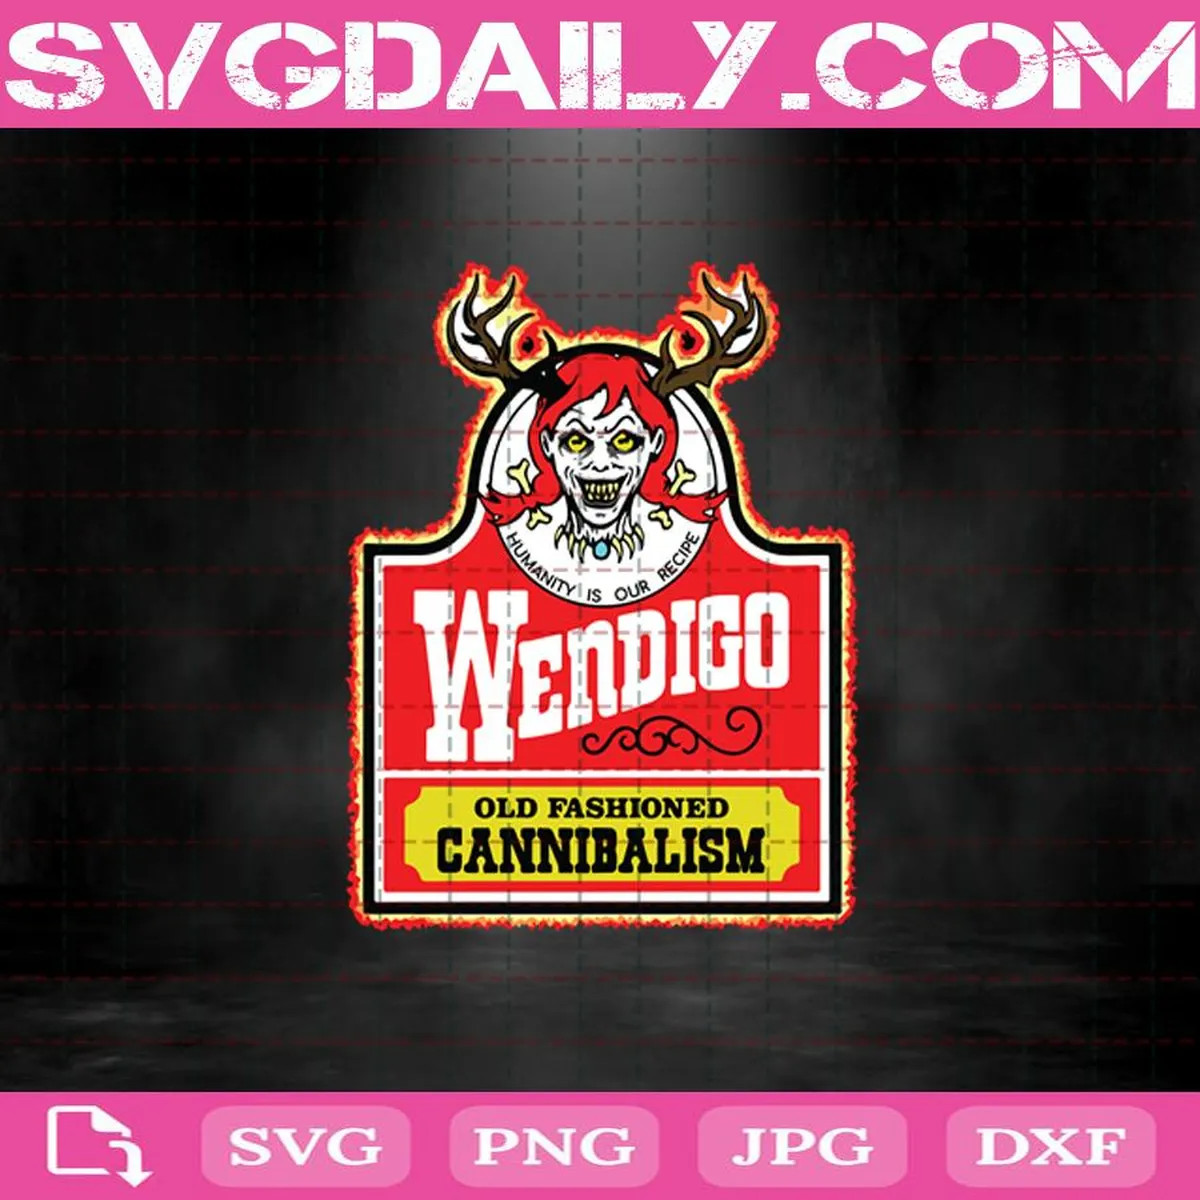 Wendigo Old Fashioned Cannibalism Svg, Wendigo Svg, Cannibalism Svg, Old Fashioned Svg Png Dxf Eps Download Files